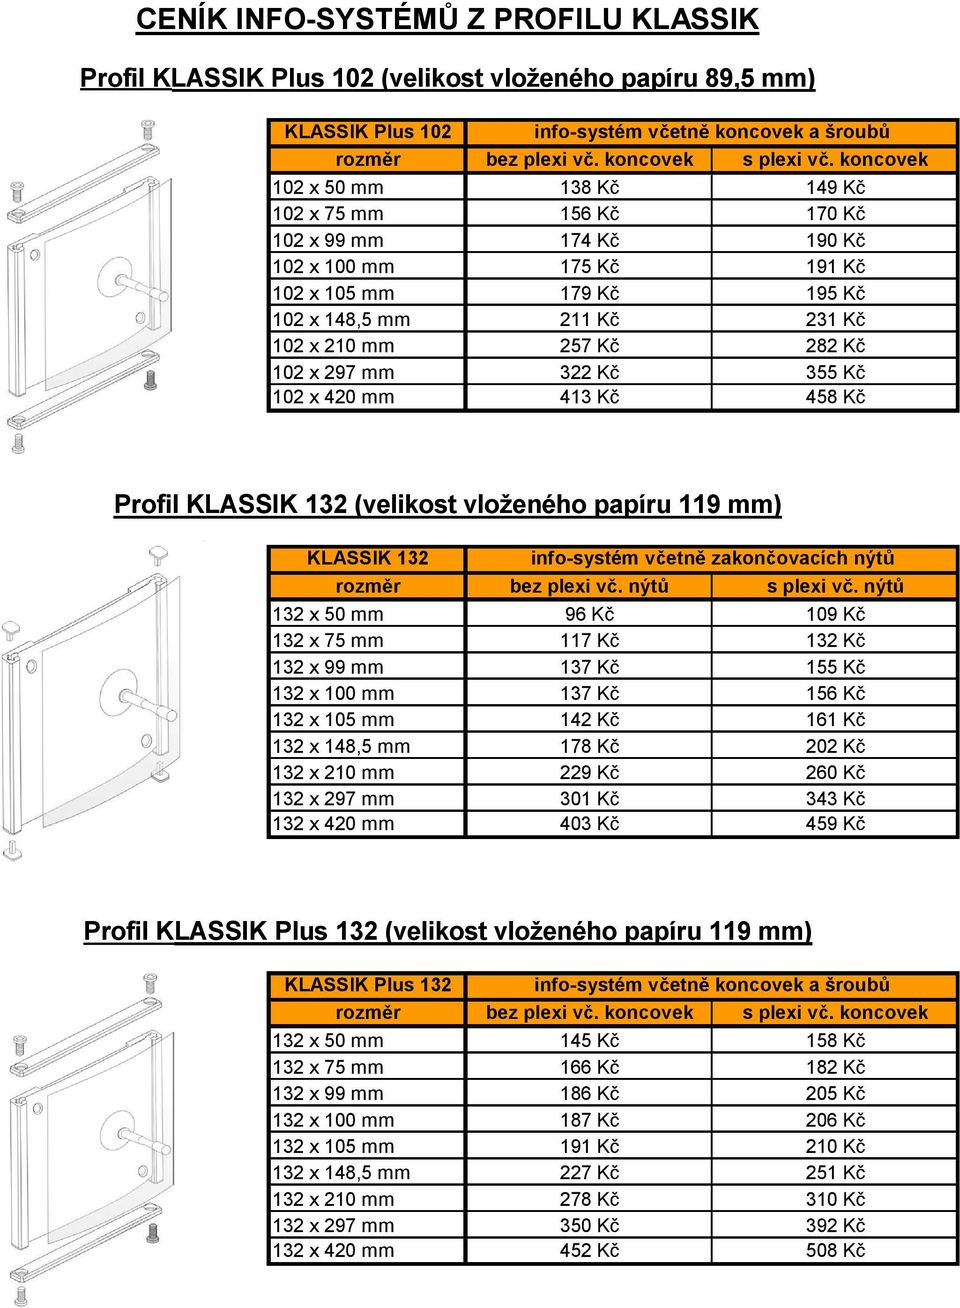 102 x420 mm 413 K 458 K Profil KLASSIK 132 (velikost vloženého papíru 119 mm) KLASSIK 132 info-systém v etn zakon ovacích nýt rozm r bez plexi v.nýt splexi v.